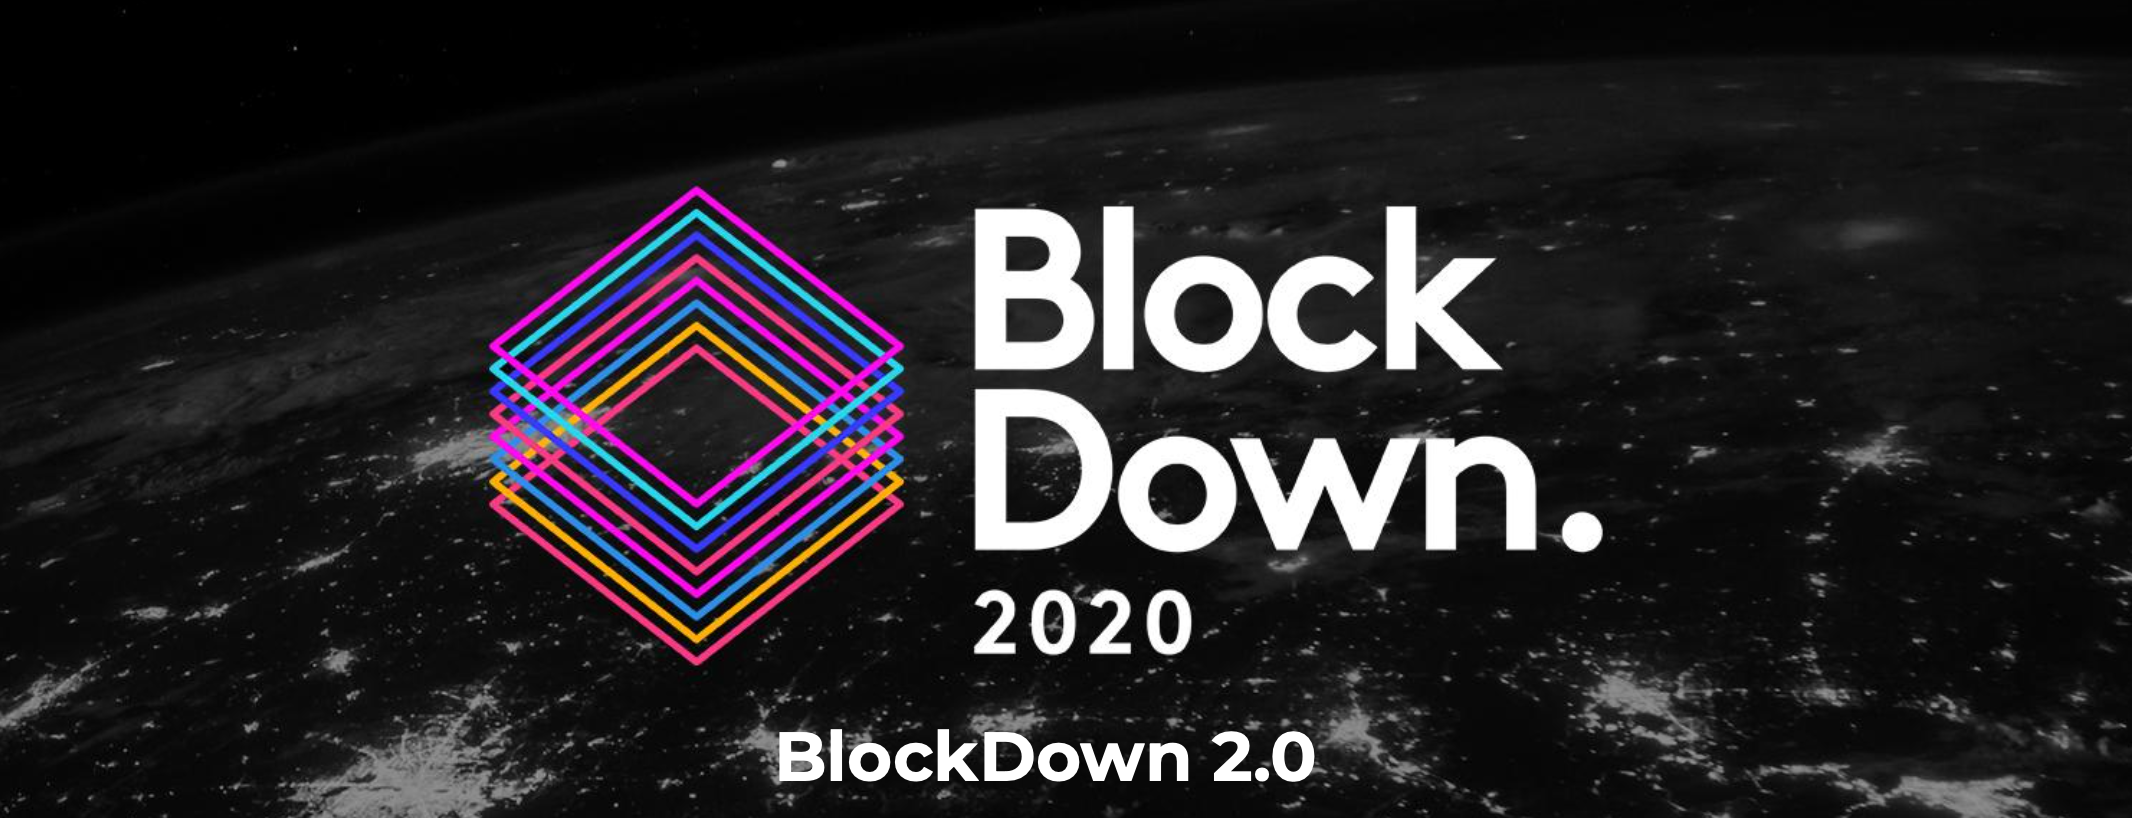 Dünyanın İlk Ulusarası 3D sanal Blockchain Konferansı  Başlıyor